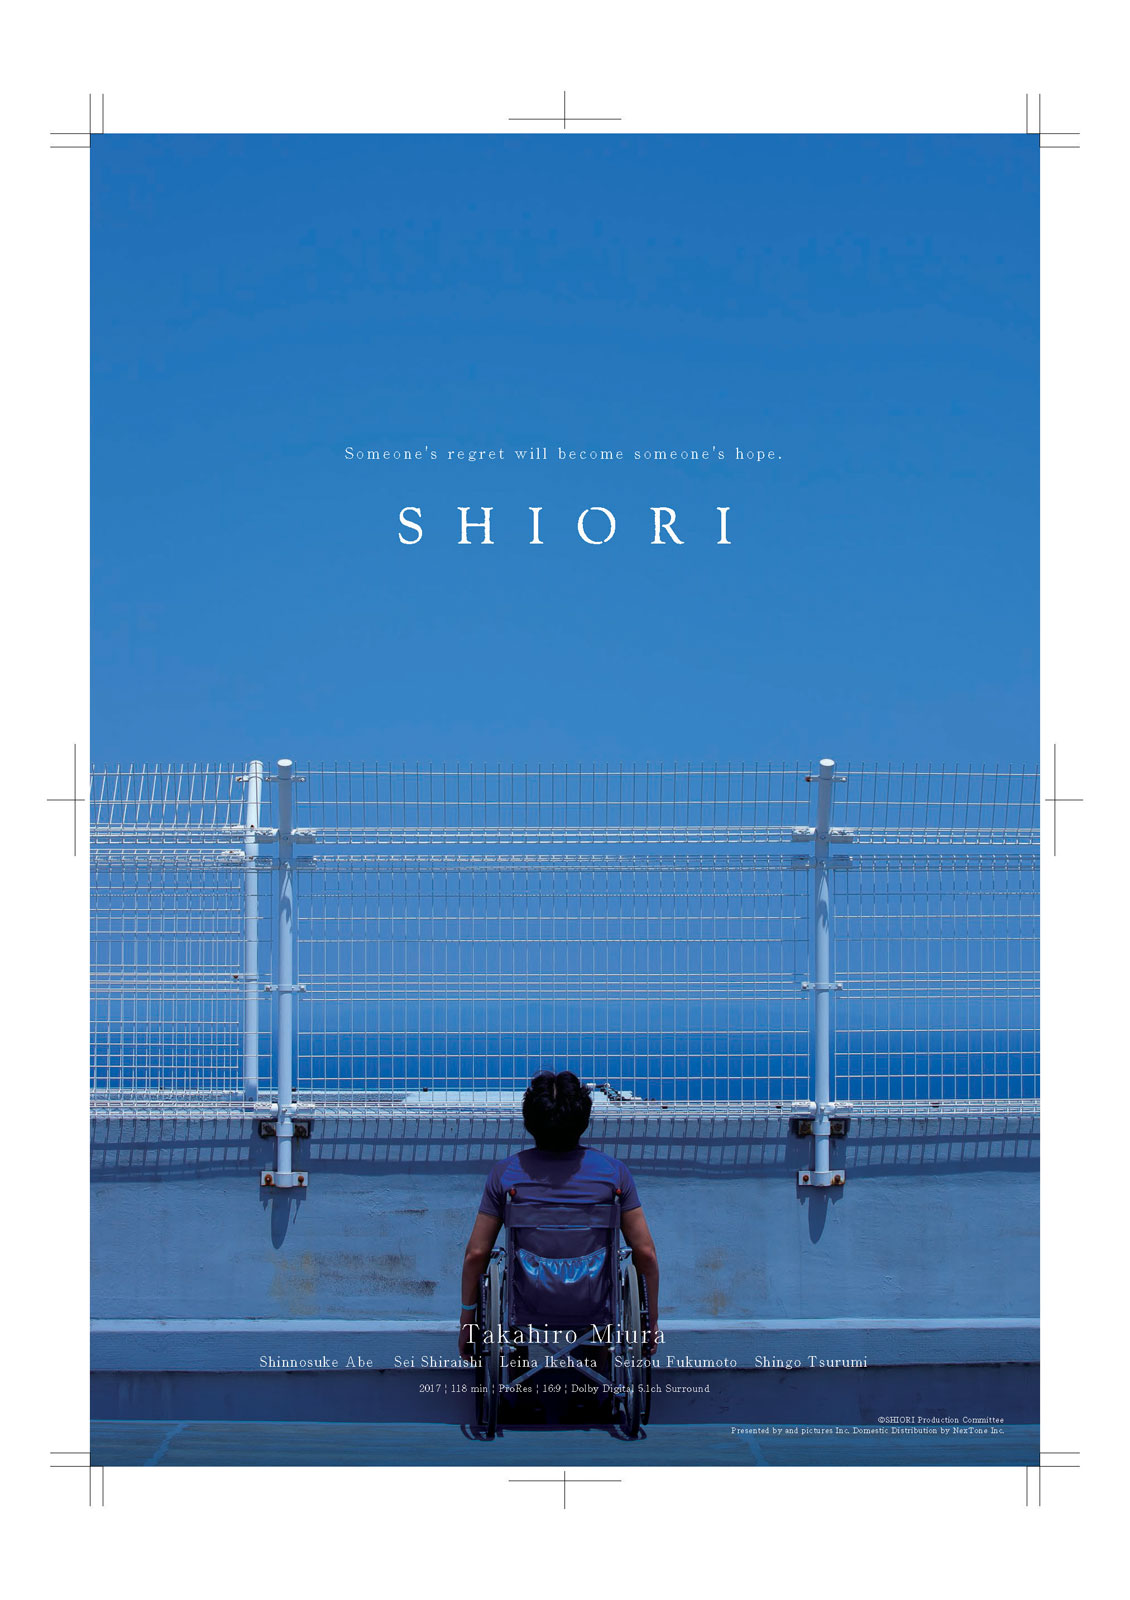 Shiori stream